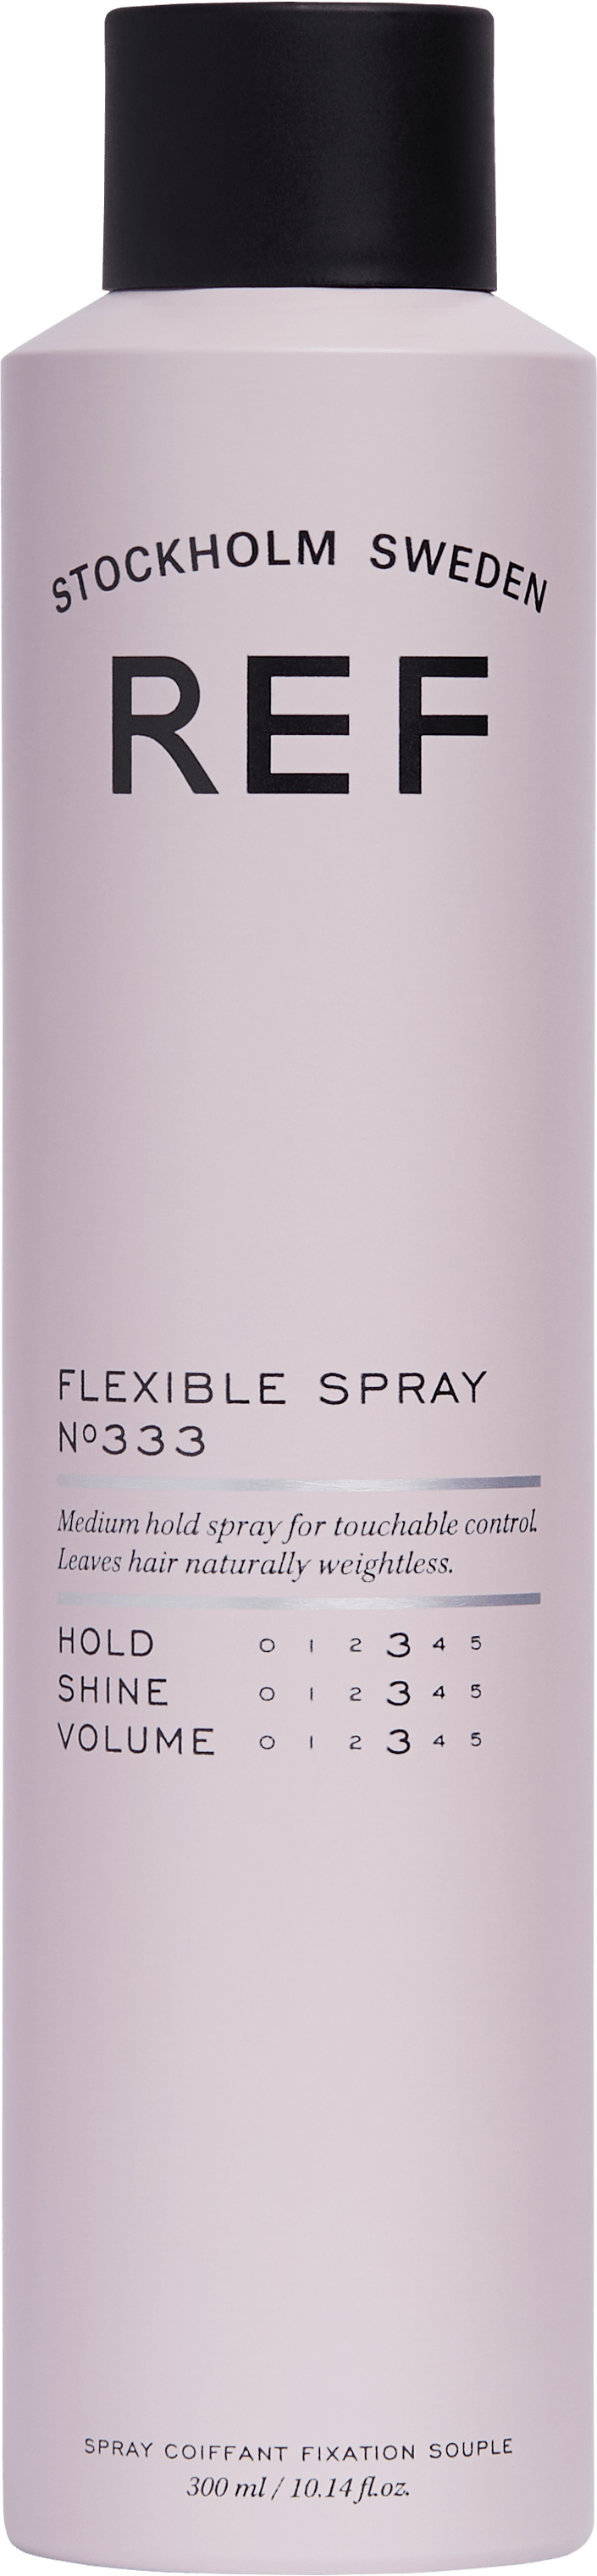 Produktbild von REF Styling - 333 Flexible Spray